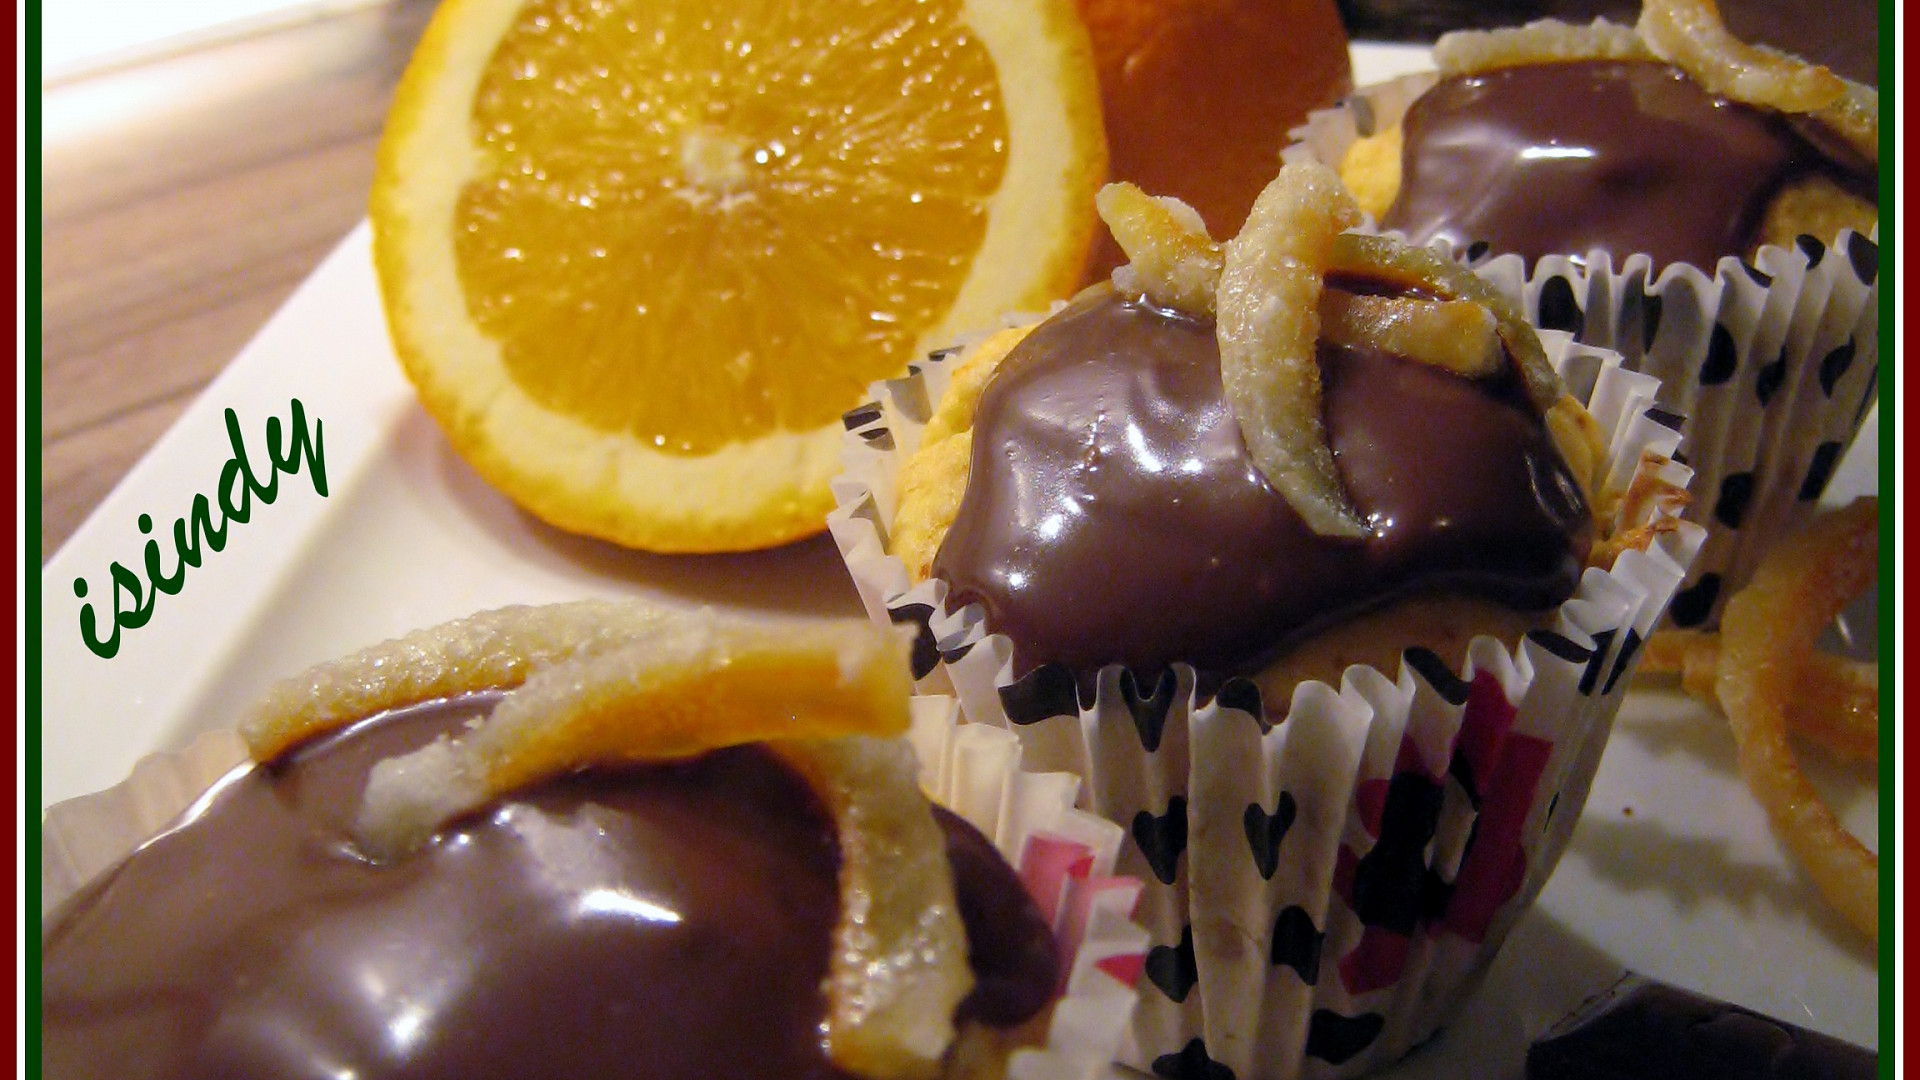 Muffiny z vařeného pomeranče s čokoládovým ganache